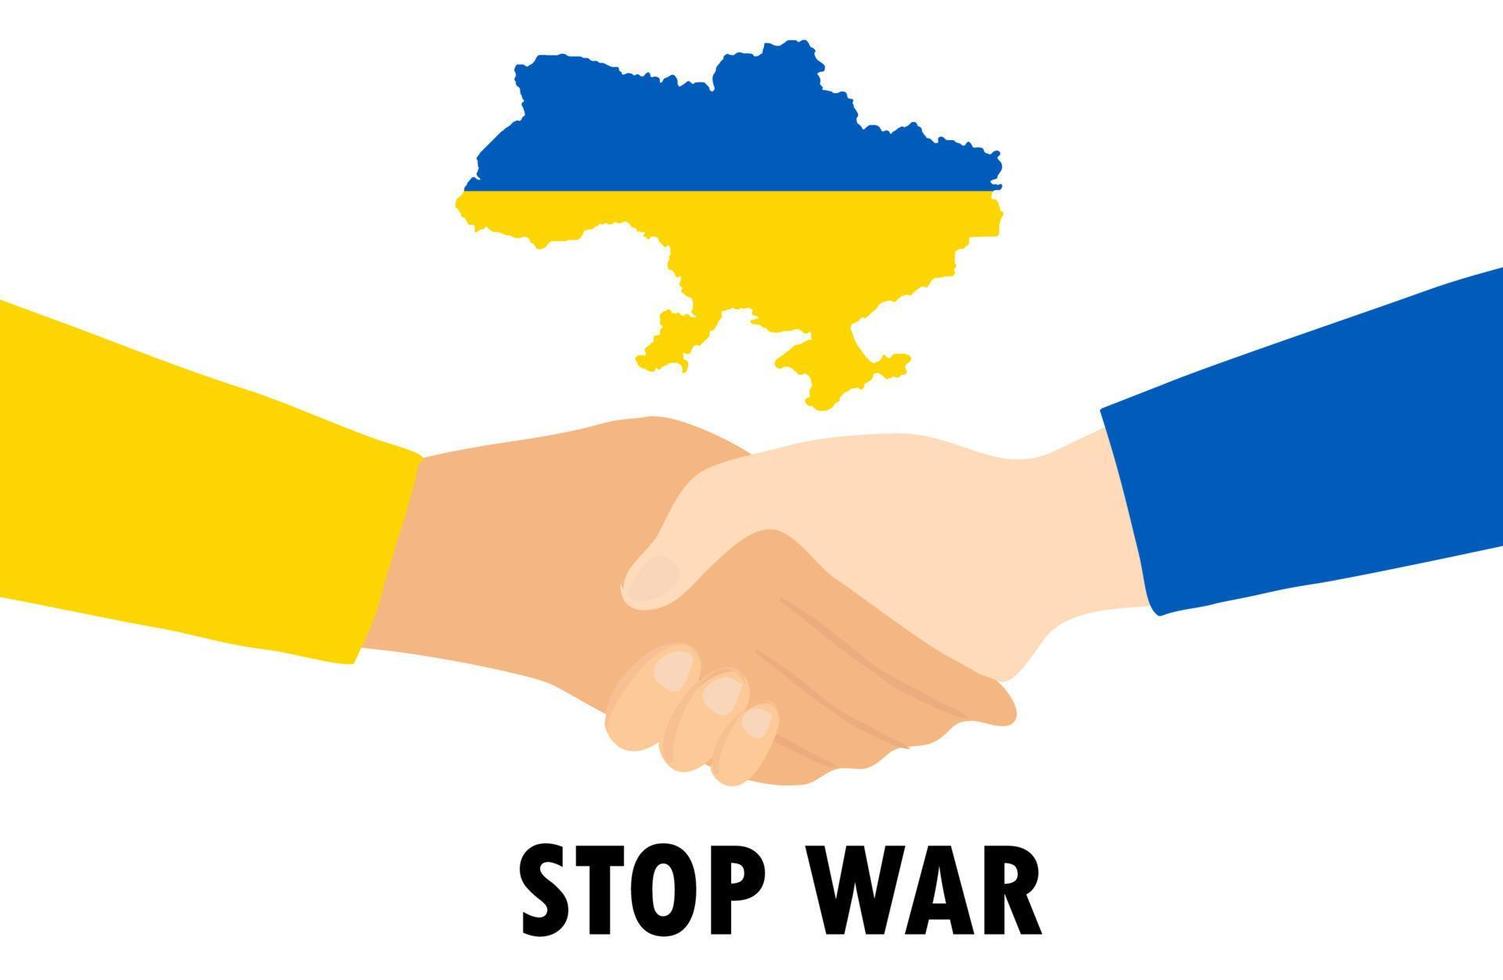 bid voor oekraïne, handdruk voor onderhandelingen en vrede, geen oorlog tussen oekraïne en rusland vectorillustratie vector